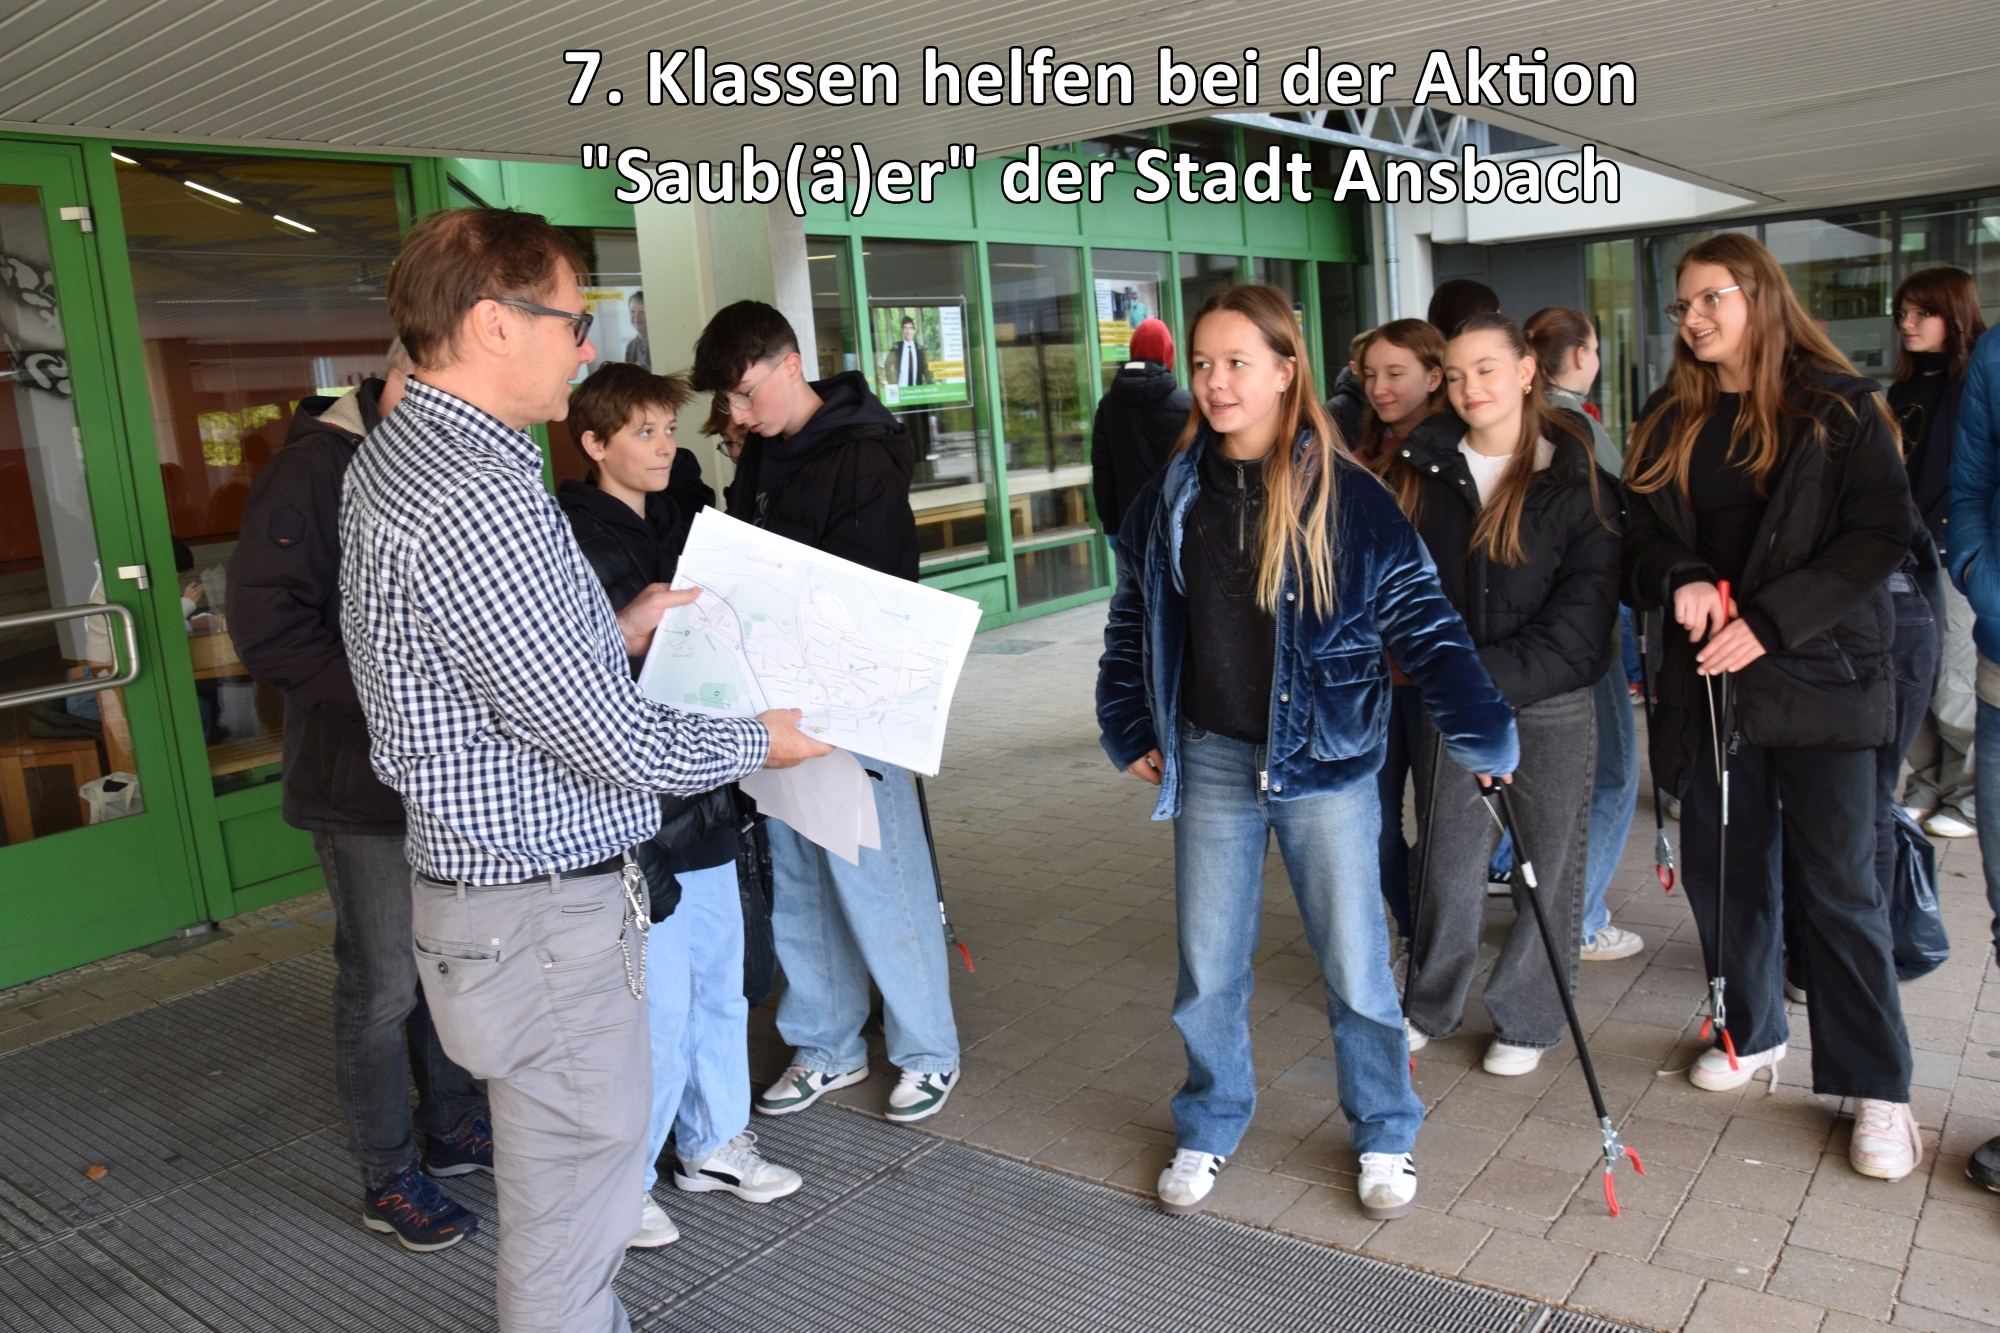 7. Klassen halfen bei der Aktion "Saub(ä)er der Stadt Ansbach